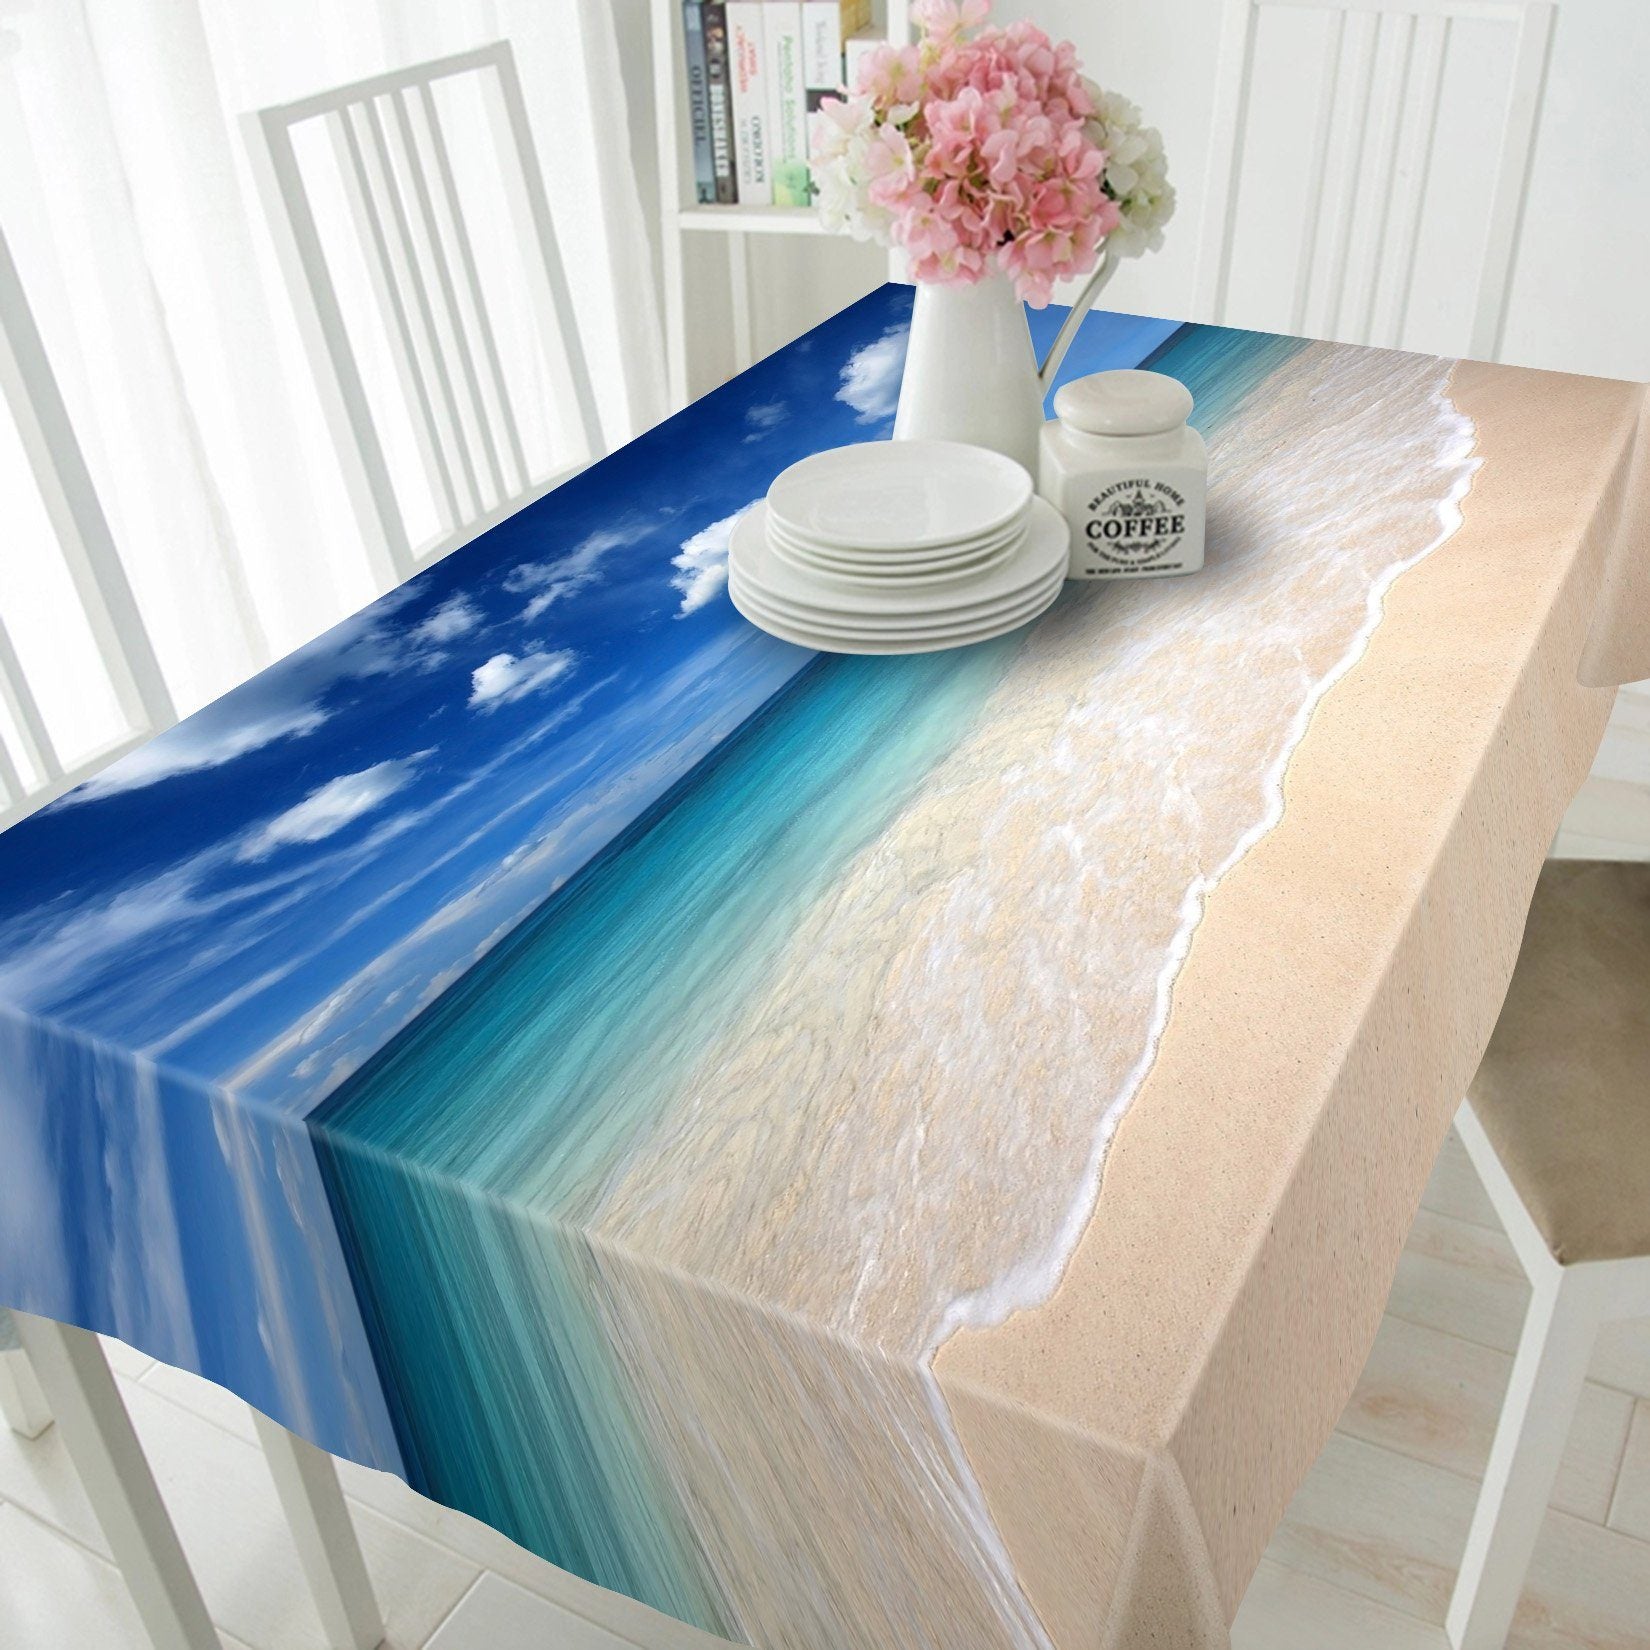 3D Blue Sea And Sky 735 Tablecloths Wallpaper AJ Wallpaper 